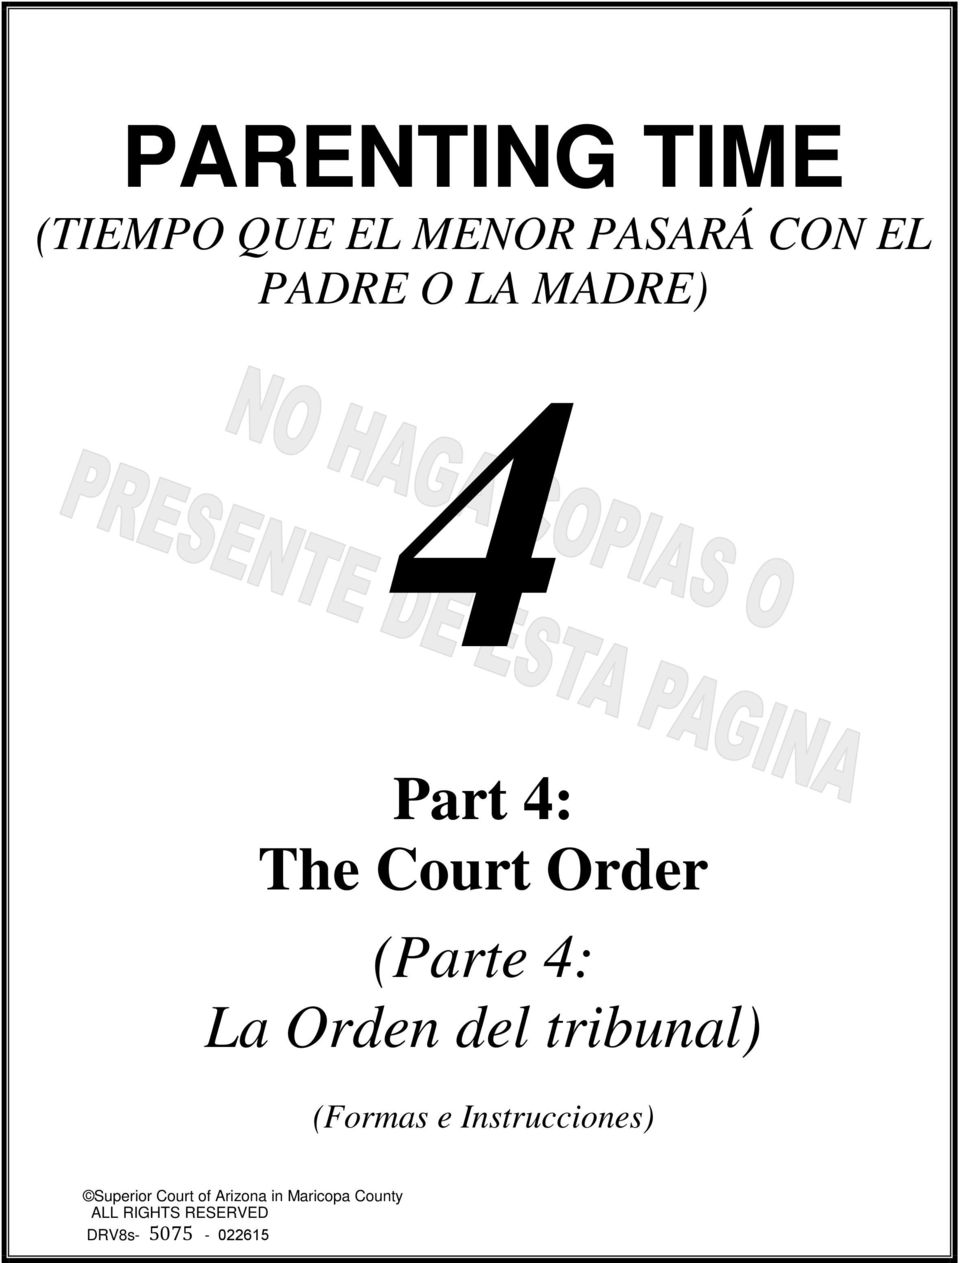 La Orden del tribunal) (Formas e Instrucciones)